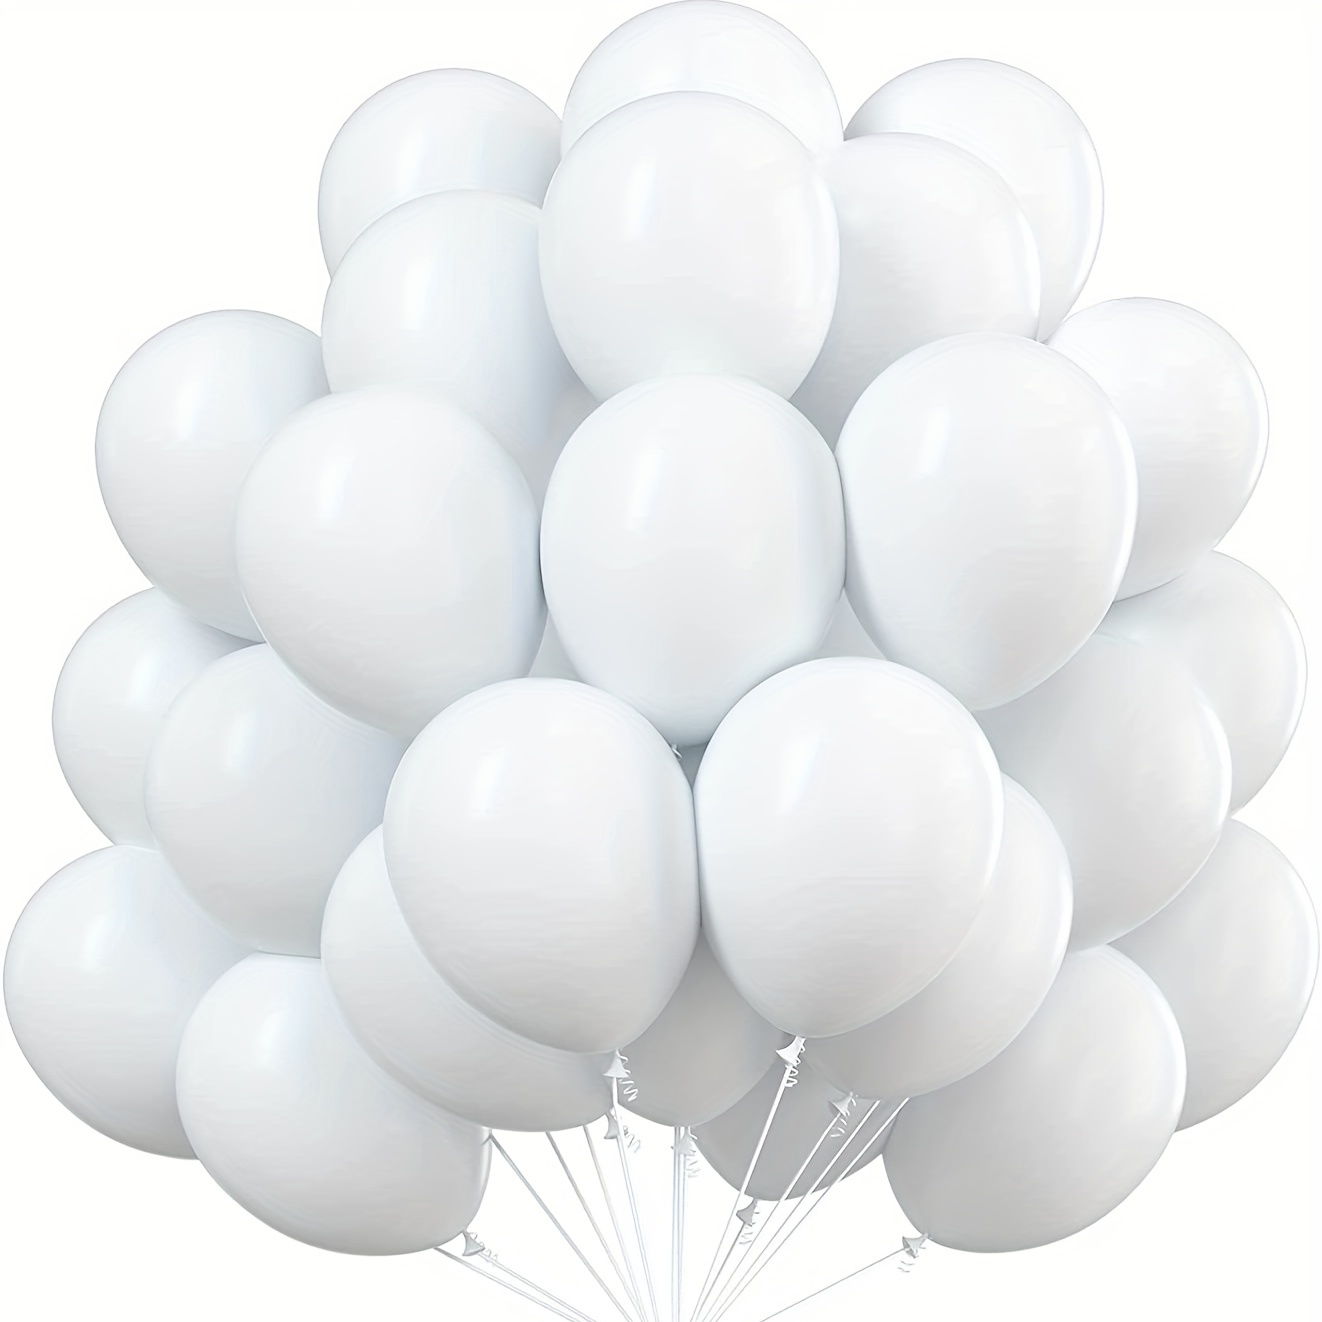 100 globos blancos de 12 pulgadas para helio, globos de látex blanco mate,  brillantes, para decoración de fiestas (blanco)